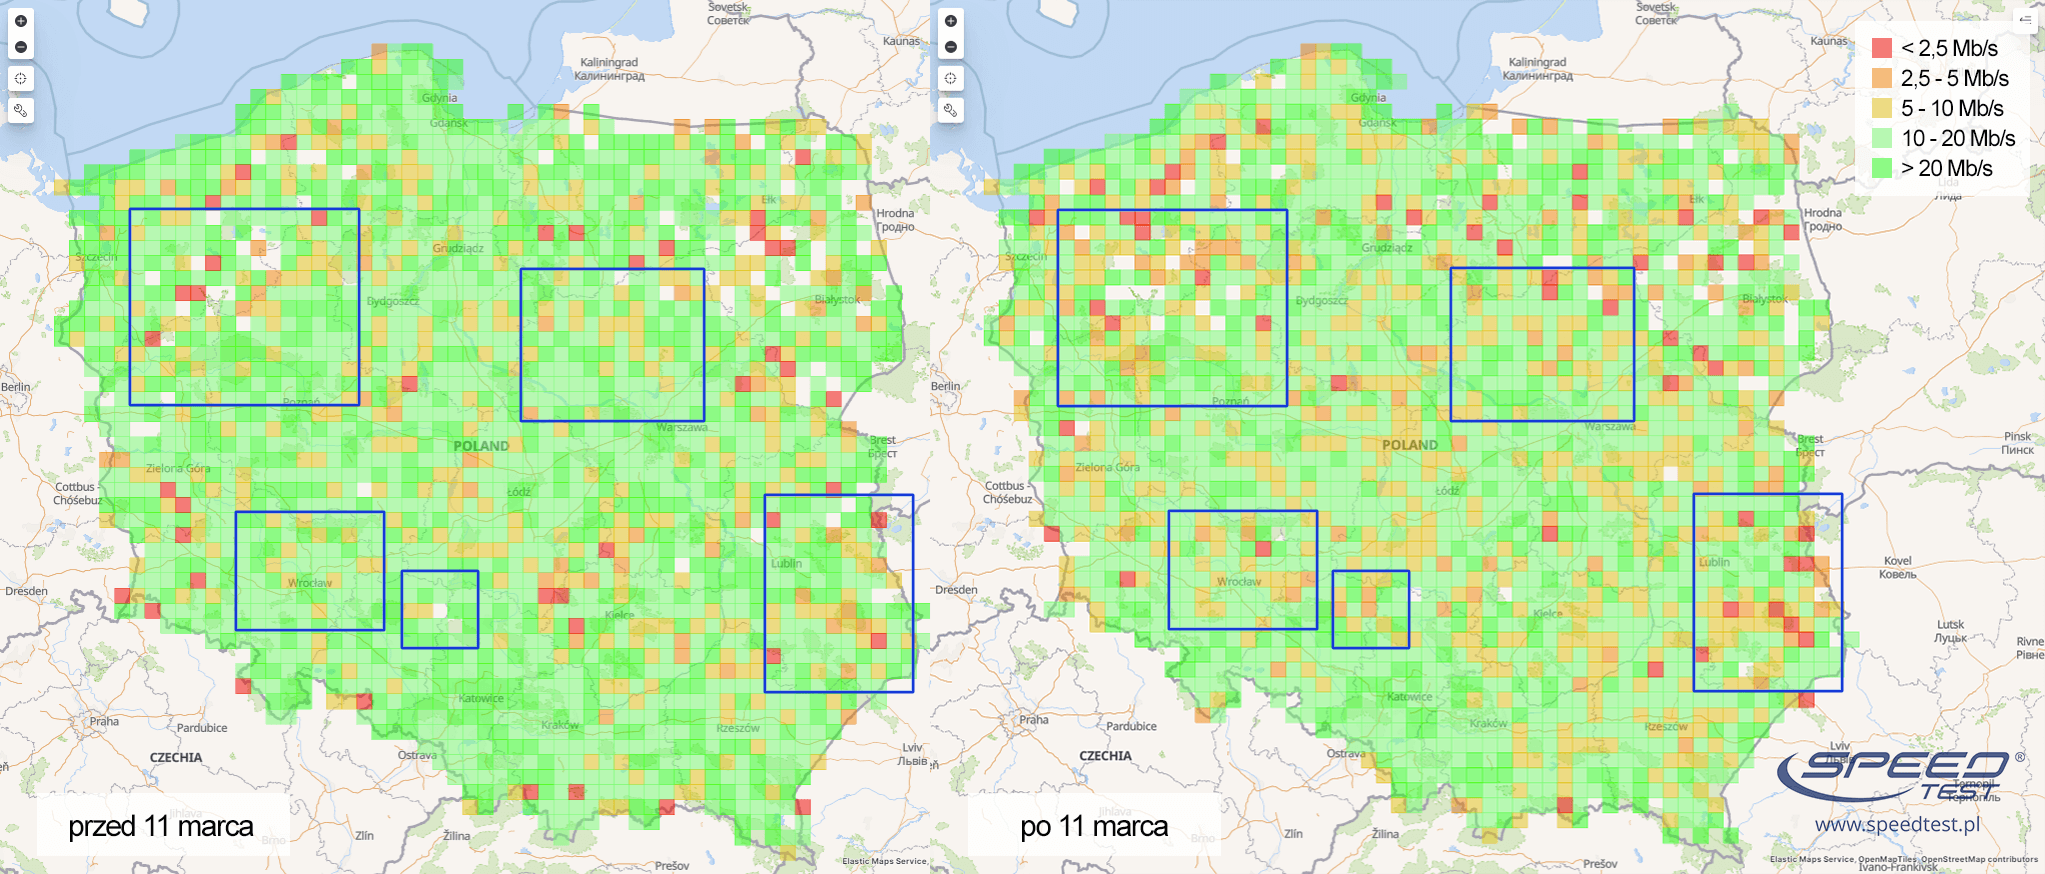 SpeedTest.pl mapa marzec 2020